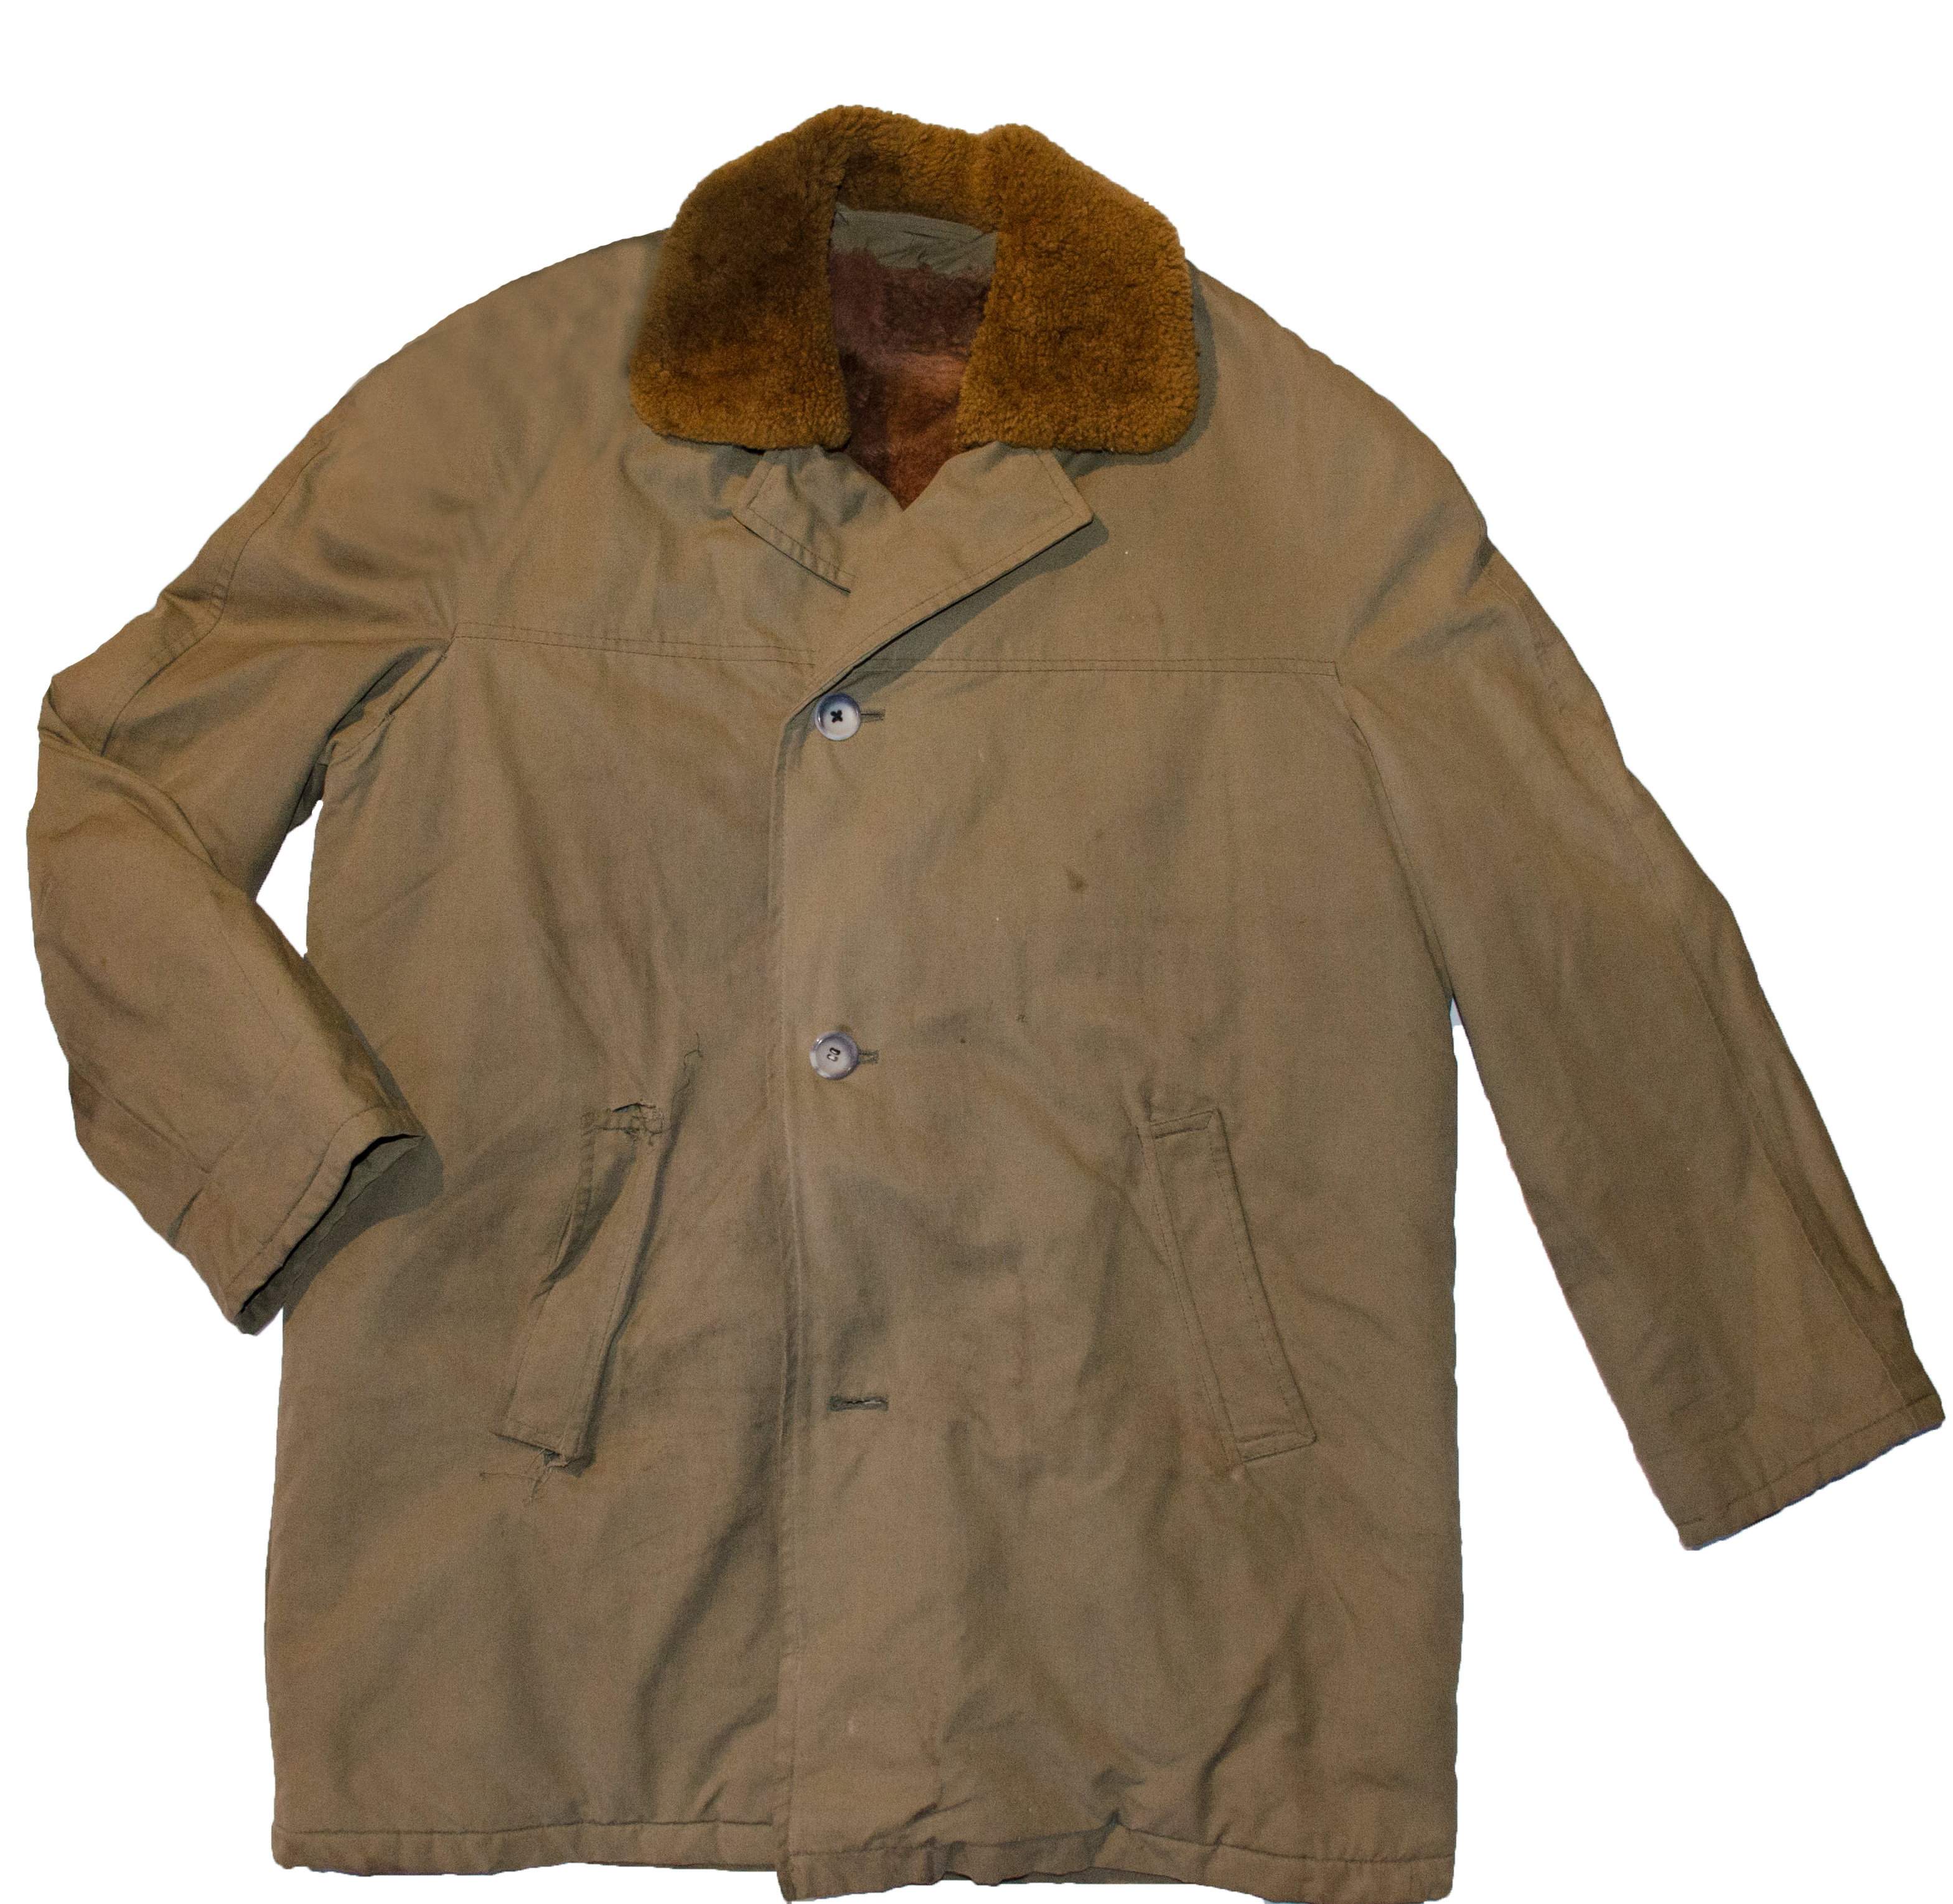 Kabát s kožichem (1) Použitý